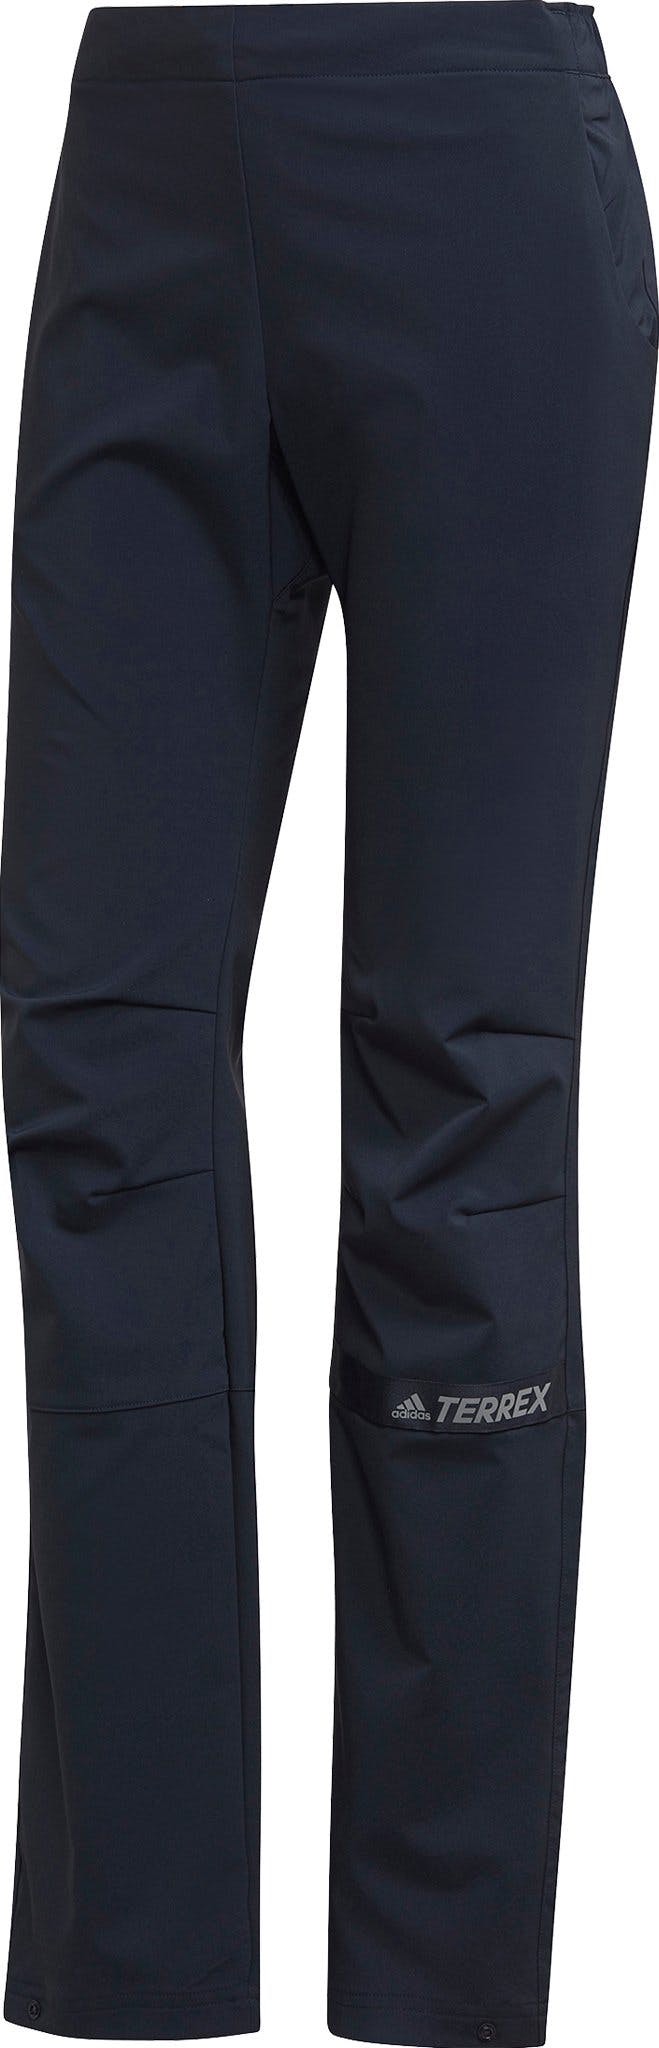 Numéro de l'image de la galerie de produits 1 pour le produit Pantalon tissé Terrex Multi - Femme